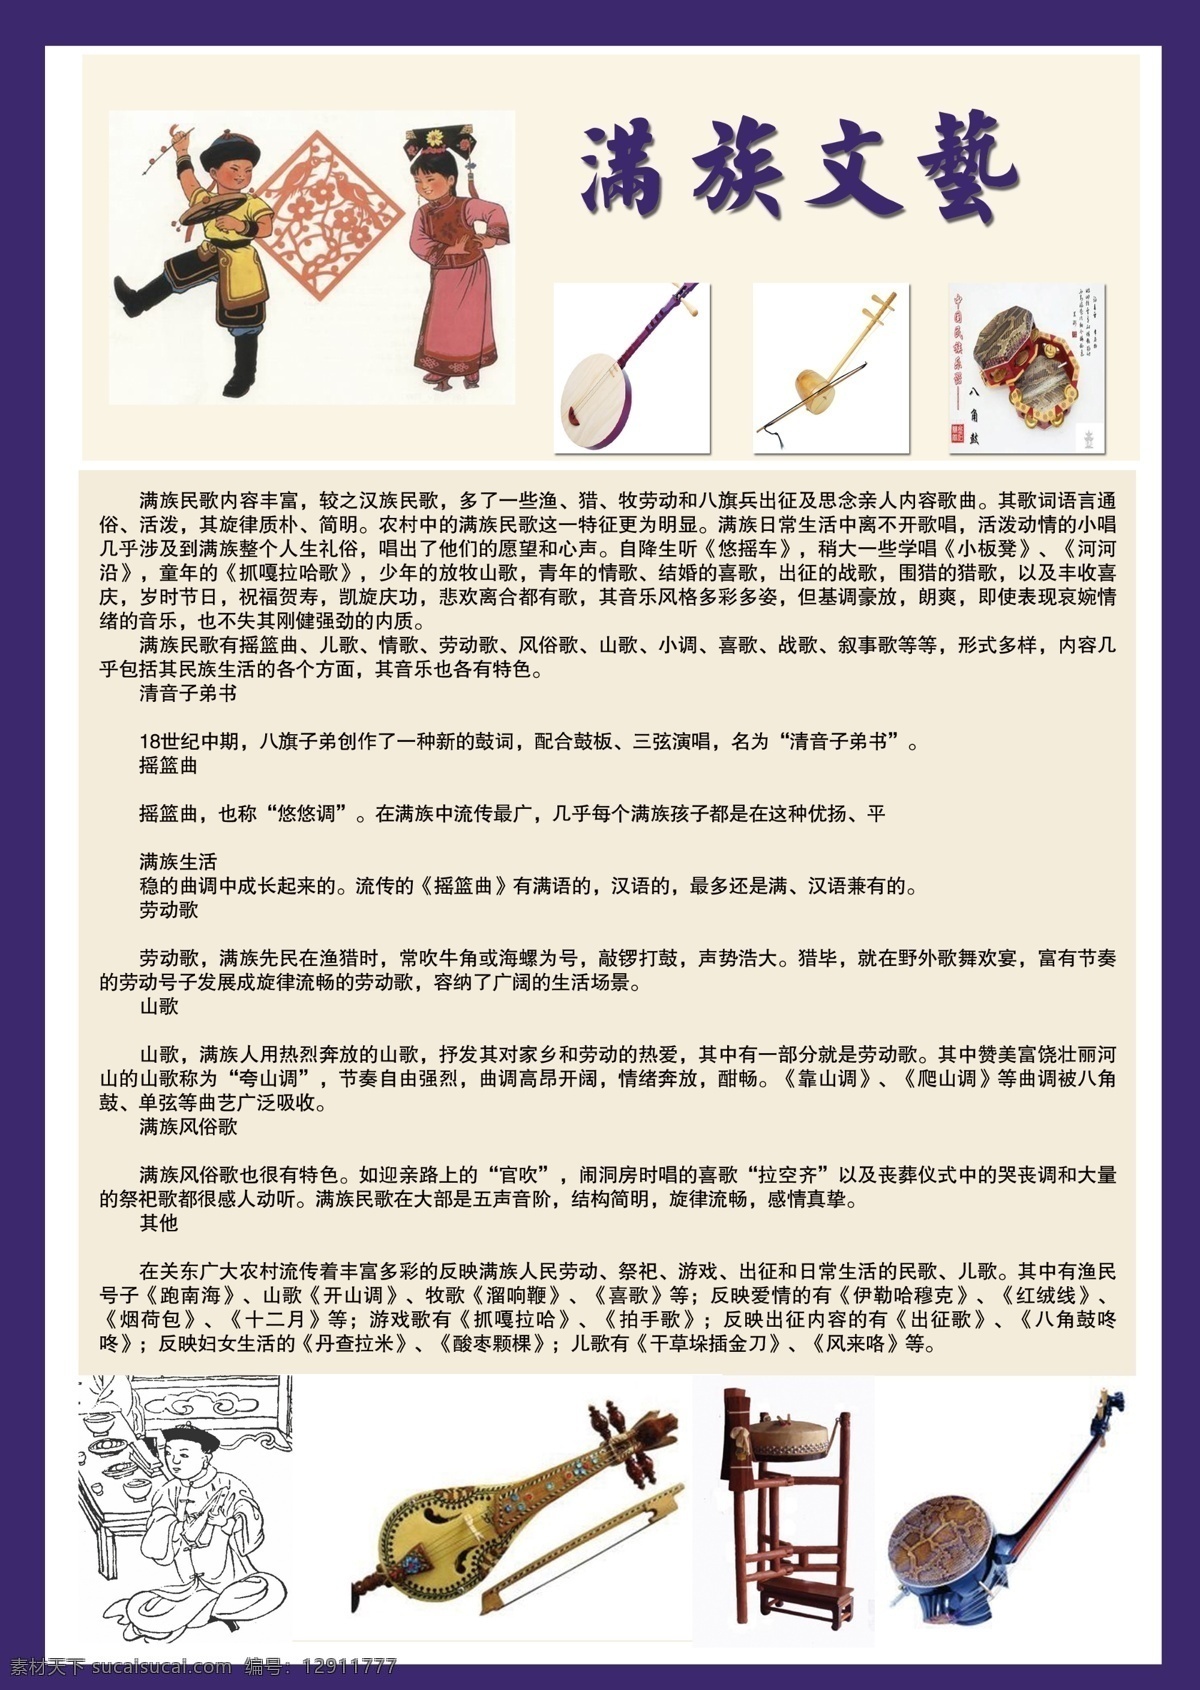 民族文化 满族 文化 节日 文化艺术 传统文化